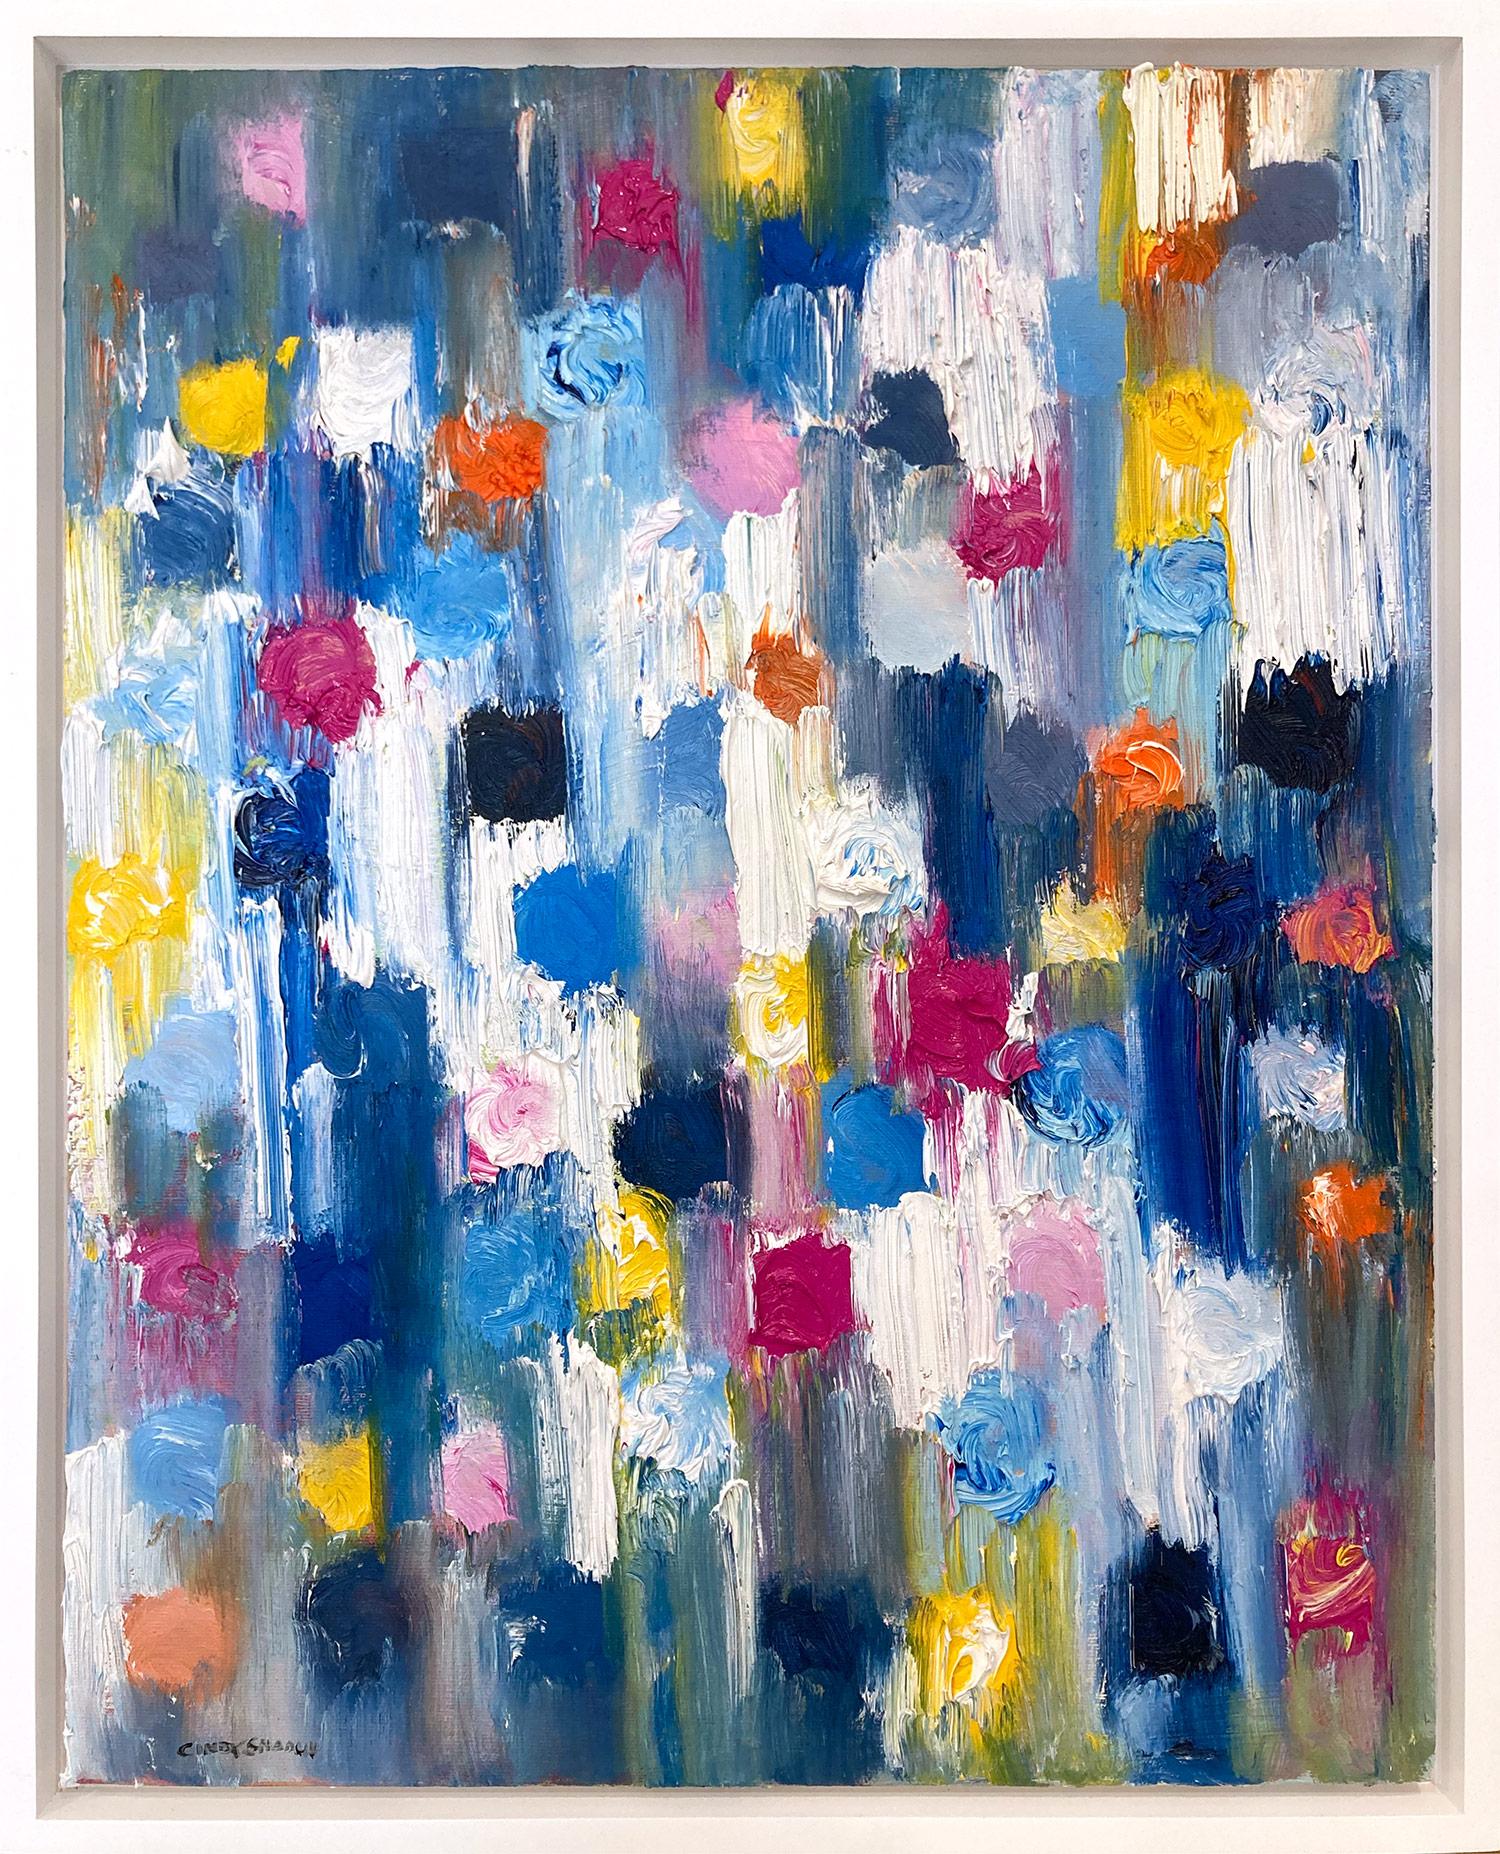 Abstract Painting Cindy Shaoul - "Dripping Dots - Tokyo" Peinture à l'huile contemporaine multicolore colorée sur toile